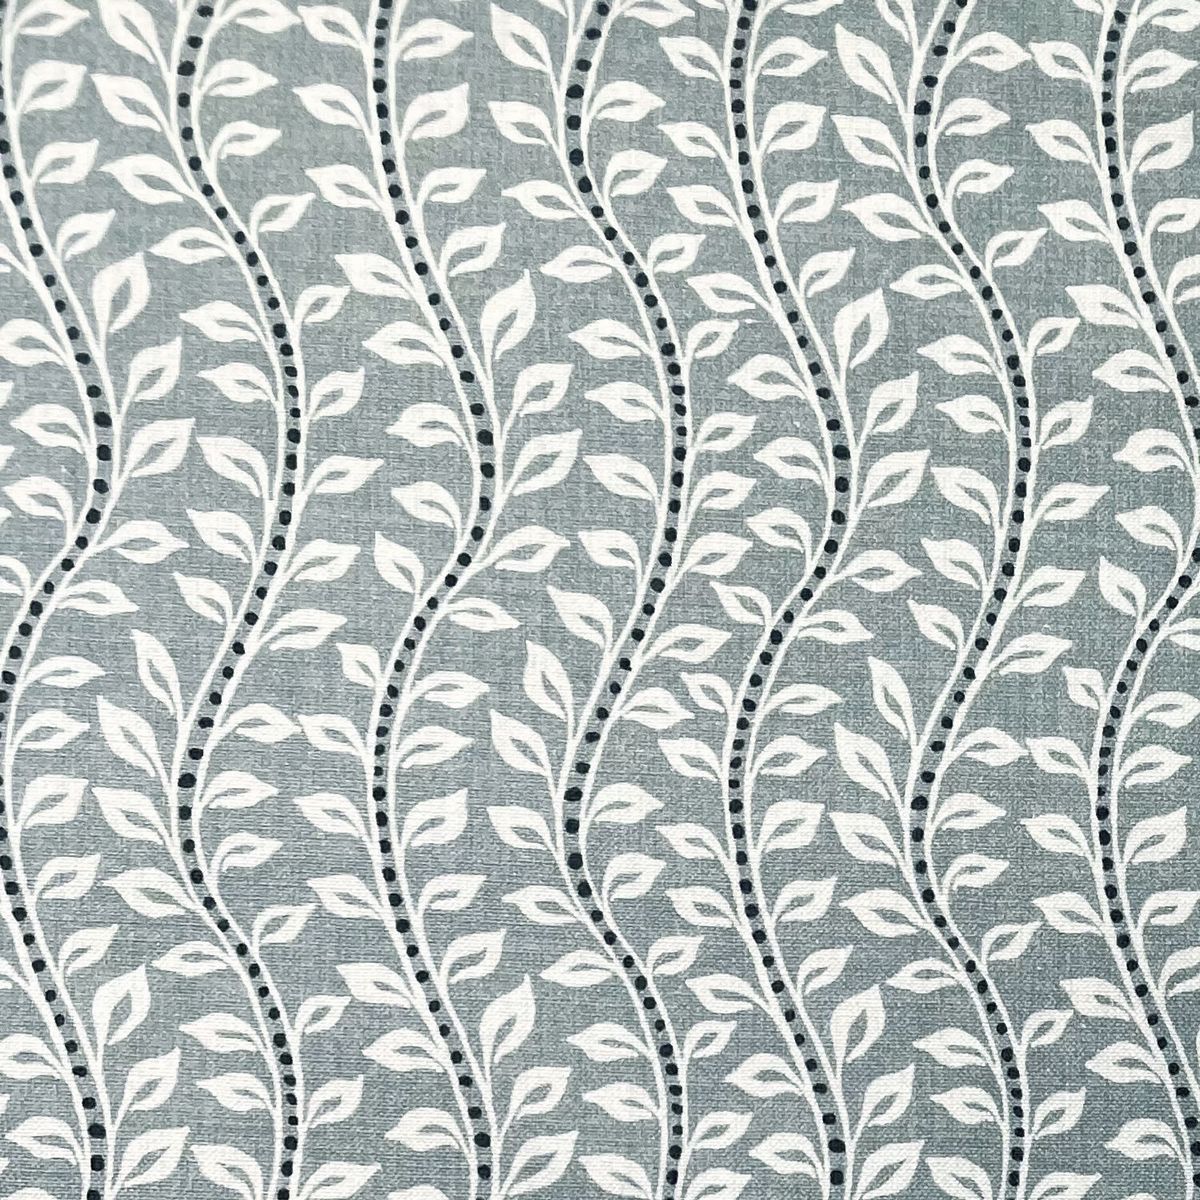 Bella Duckegg Fabric by Chatham Glyn